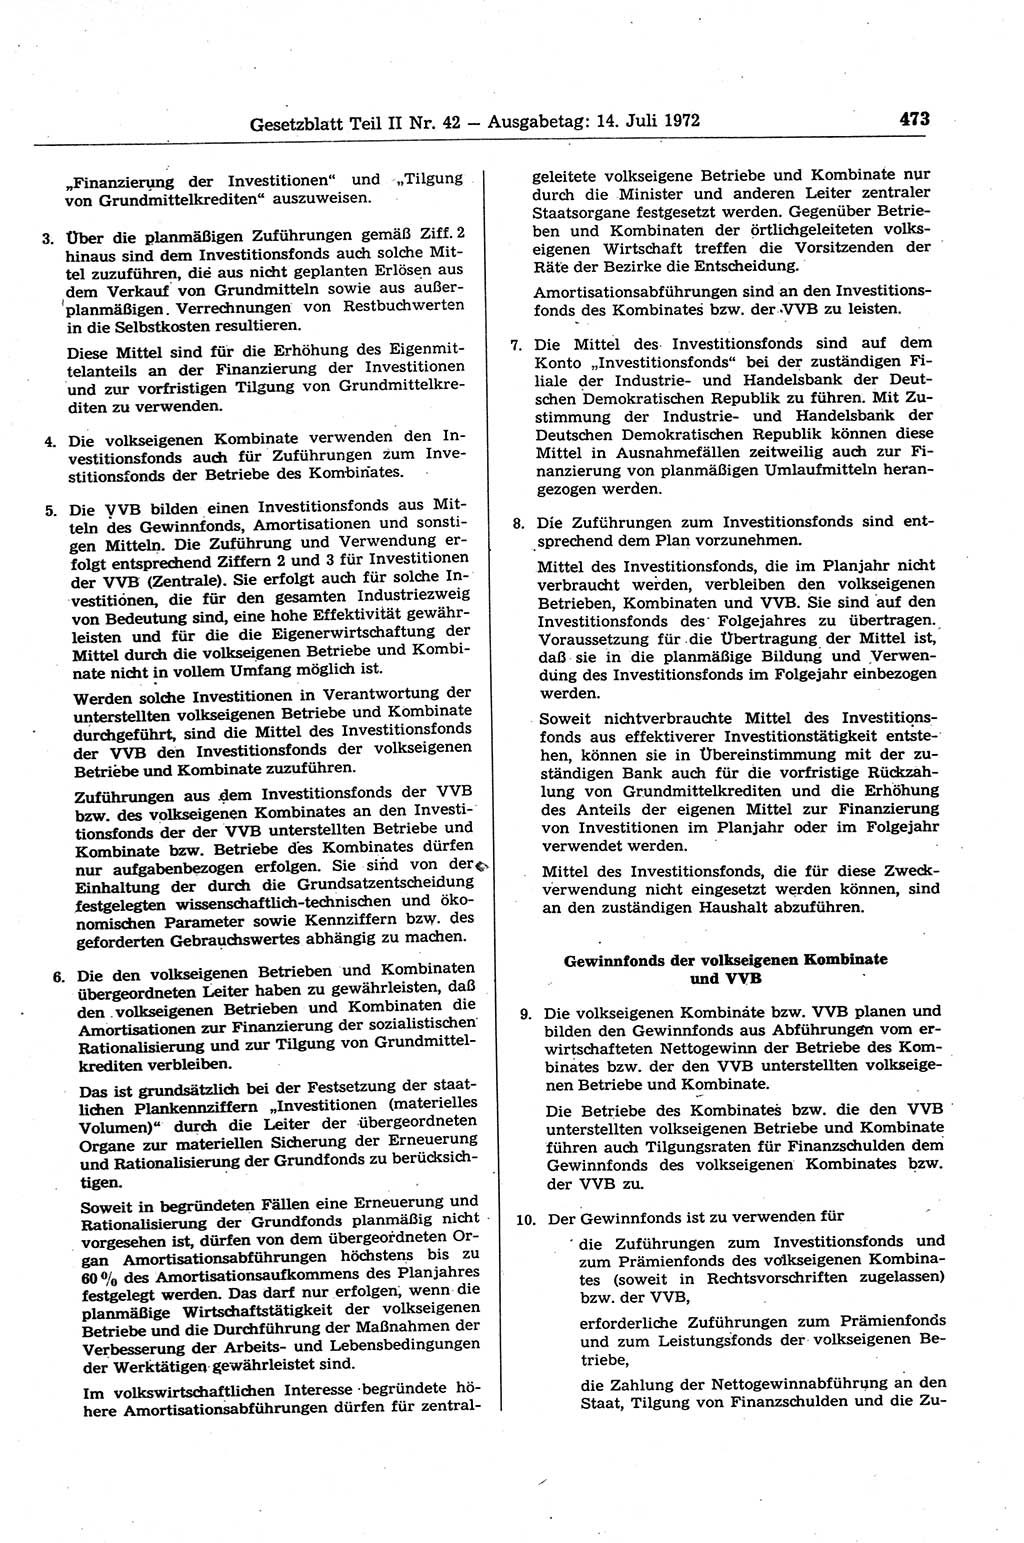 Gesetzblatt (GBl.) der Deutschen Demokratischen Republik (DDR) Teil ⅠⅠ 1972, Seite 473 (GBl. DDR ⅠⅠ 1972, S. 473)